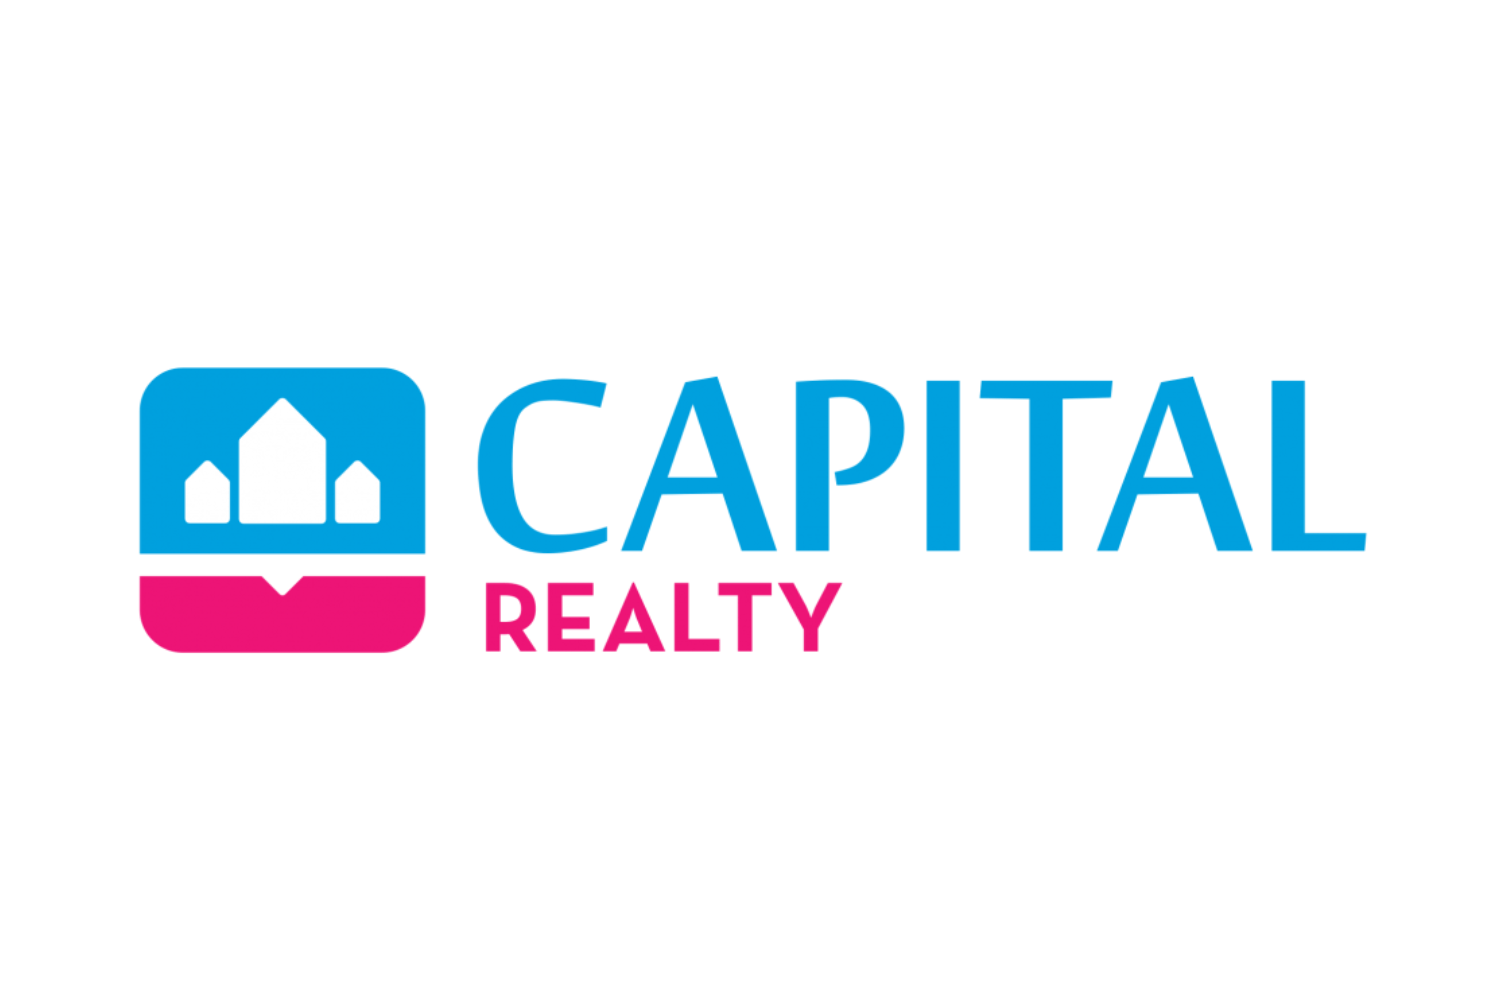 capital realty - Mafija tamsoje klientai